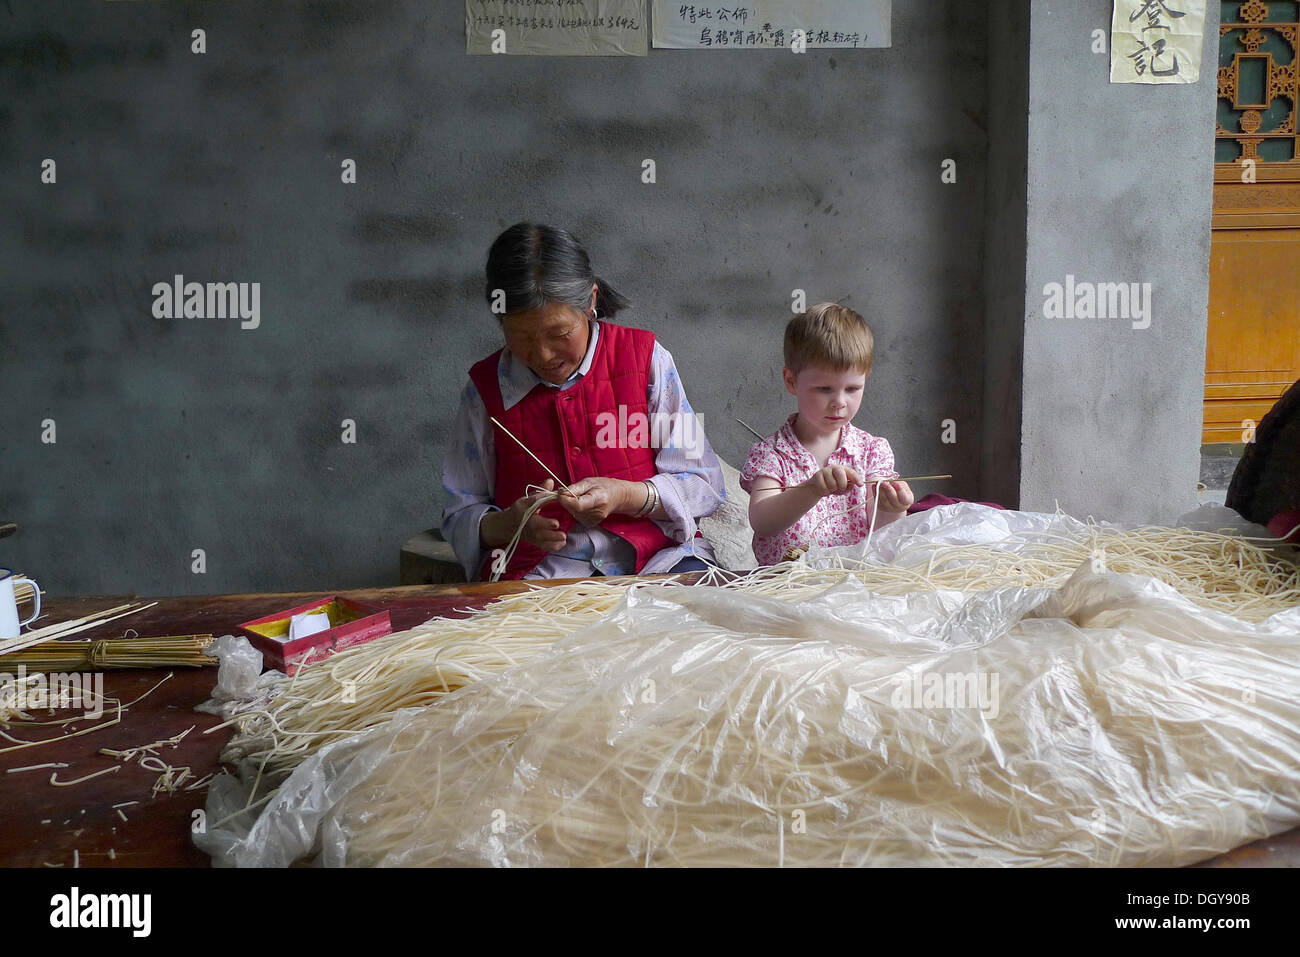 Incontra in Cina, giovane ragazza europea aiutando sulla vecchia donna cinese rendendo i bastoncini di incenso, Moxi, Hailuogou, Sichuan, in Cina Foto Stock